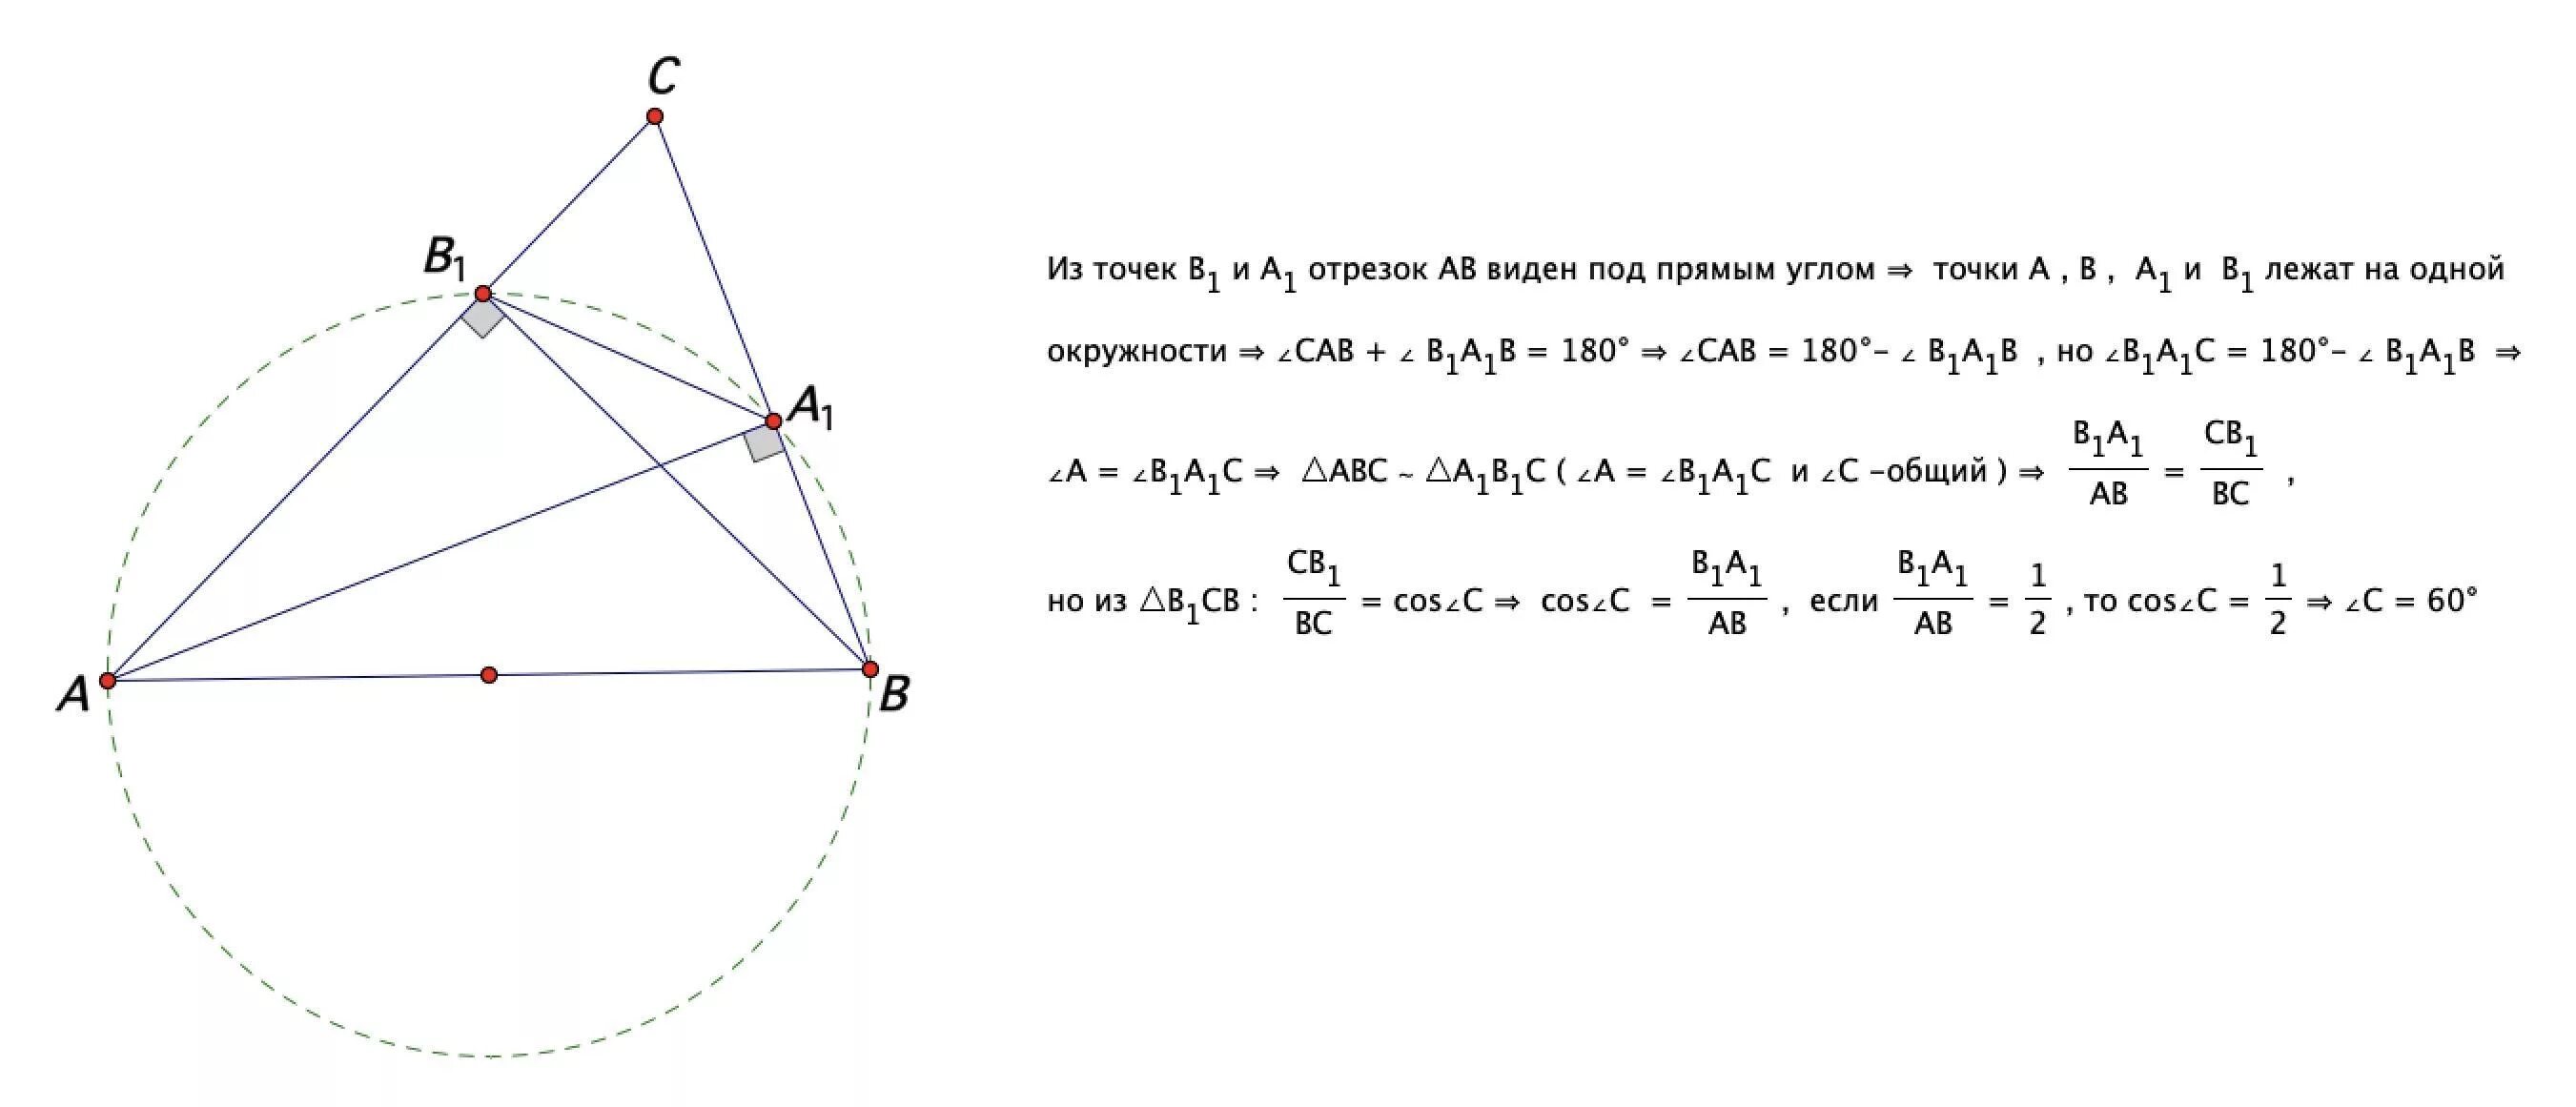 Известно что точка b. В треугольнике ABC проведены высоты aa1 и bb1. В треугольнике АВС проведены высоты аа1 и бб1. В треугольнике ABC проведены высоты aa1 bb1 cc1 известно что угол Bac 120. Высоты aa1 и bb1 треугольника ABC.